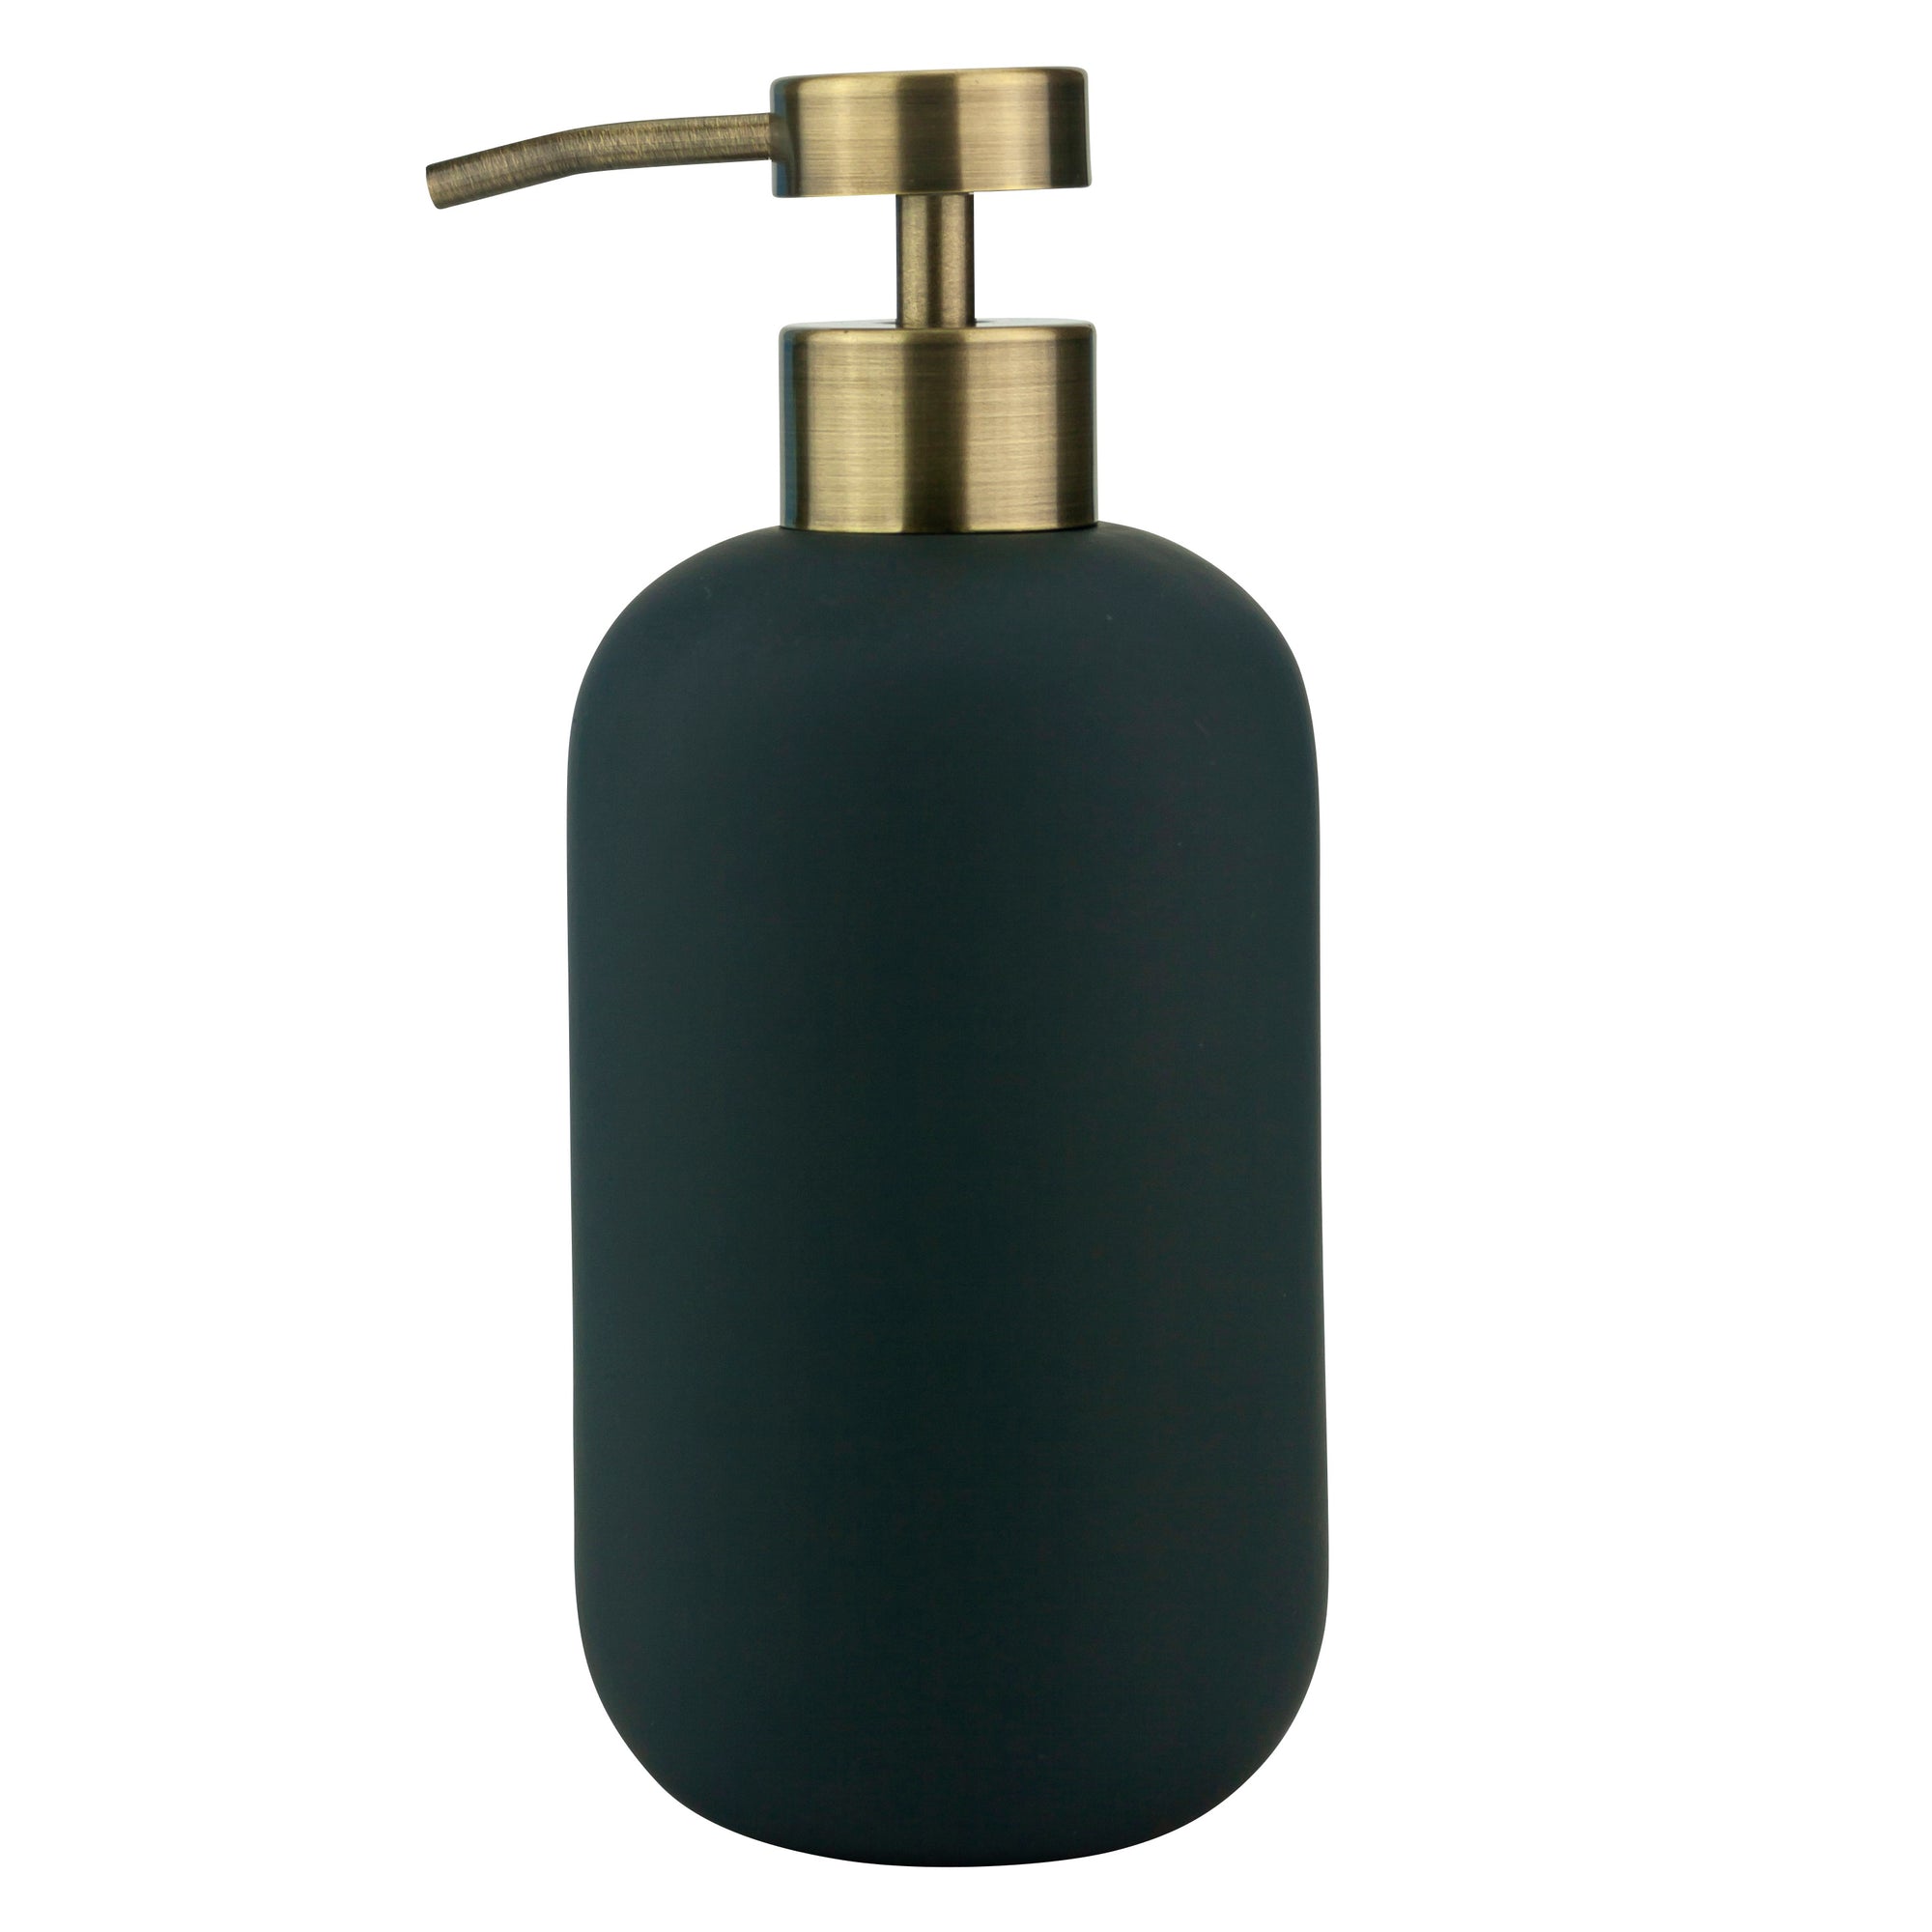 LOTUS Soap Dispenser- Anthracite